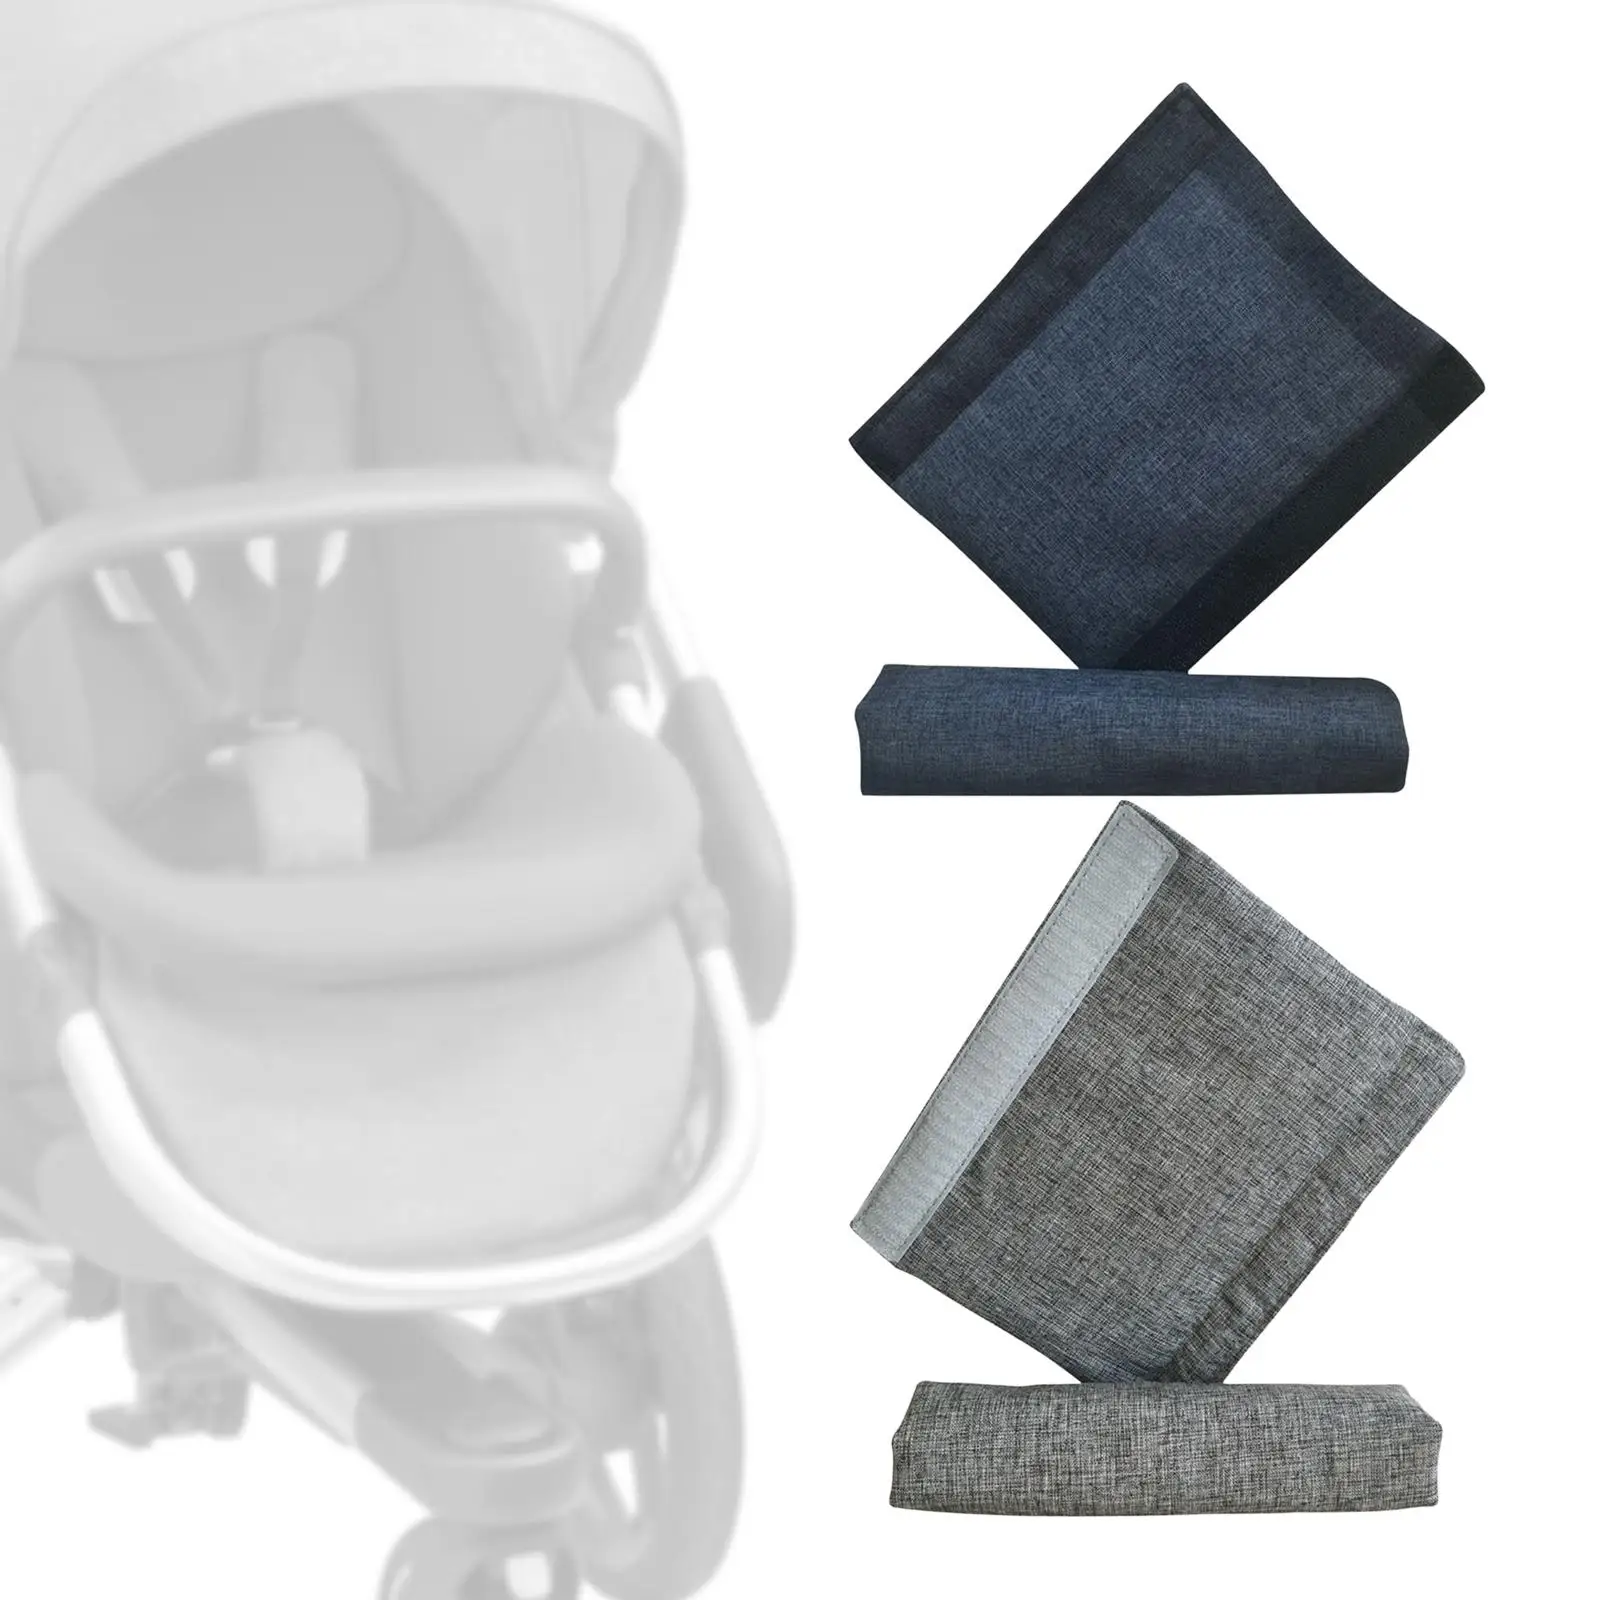 2x Stroller Handlebar Covers Protector Durable for Infant Toddler Pram